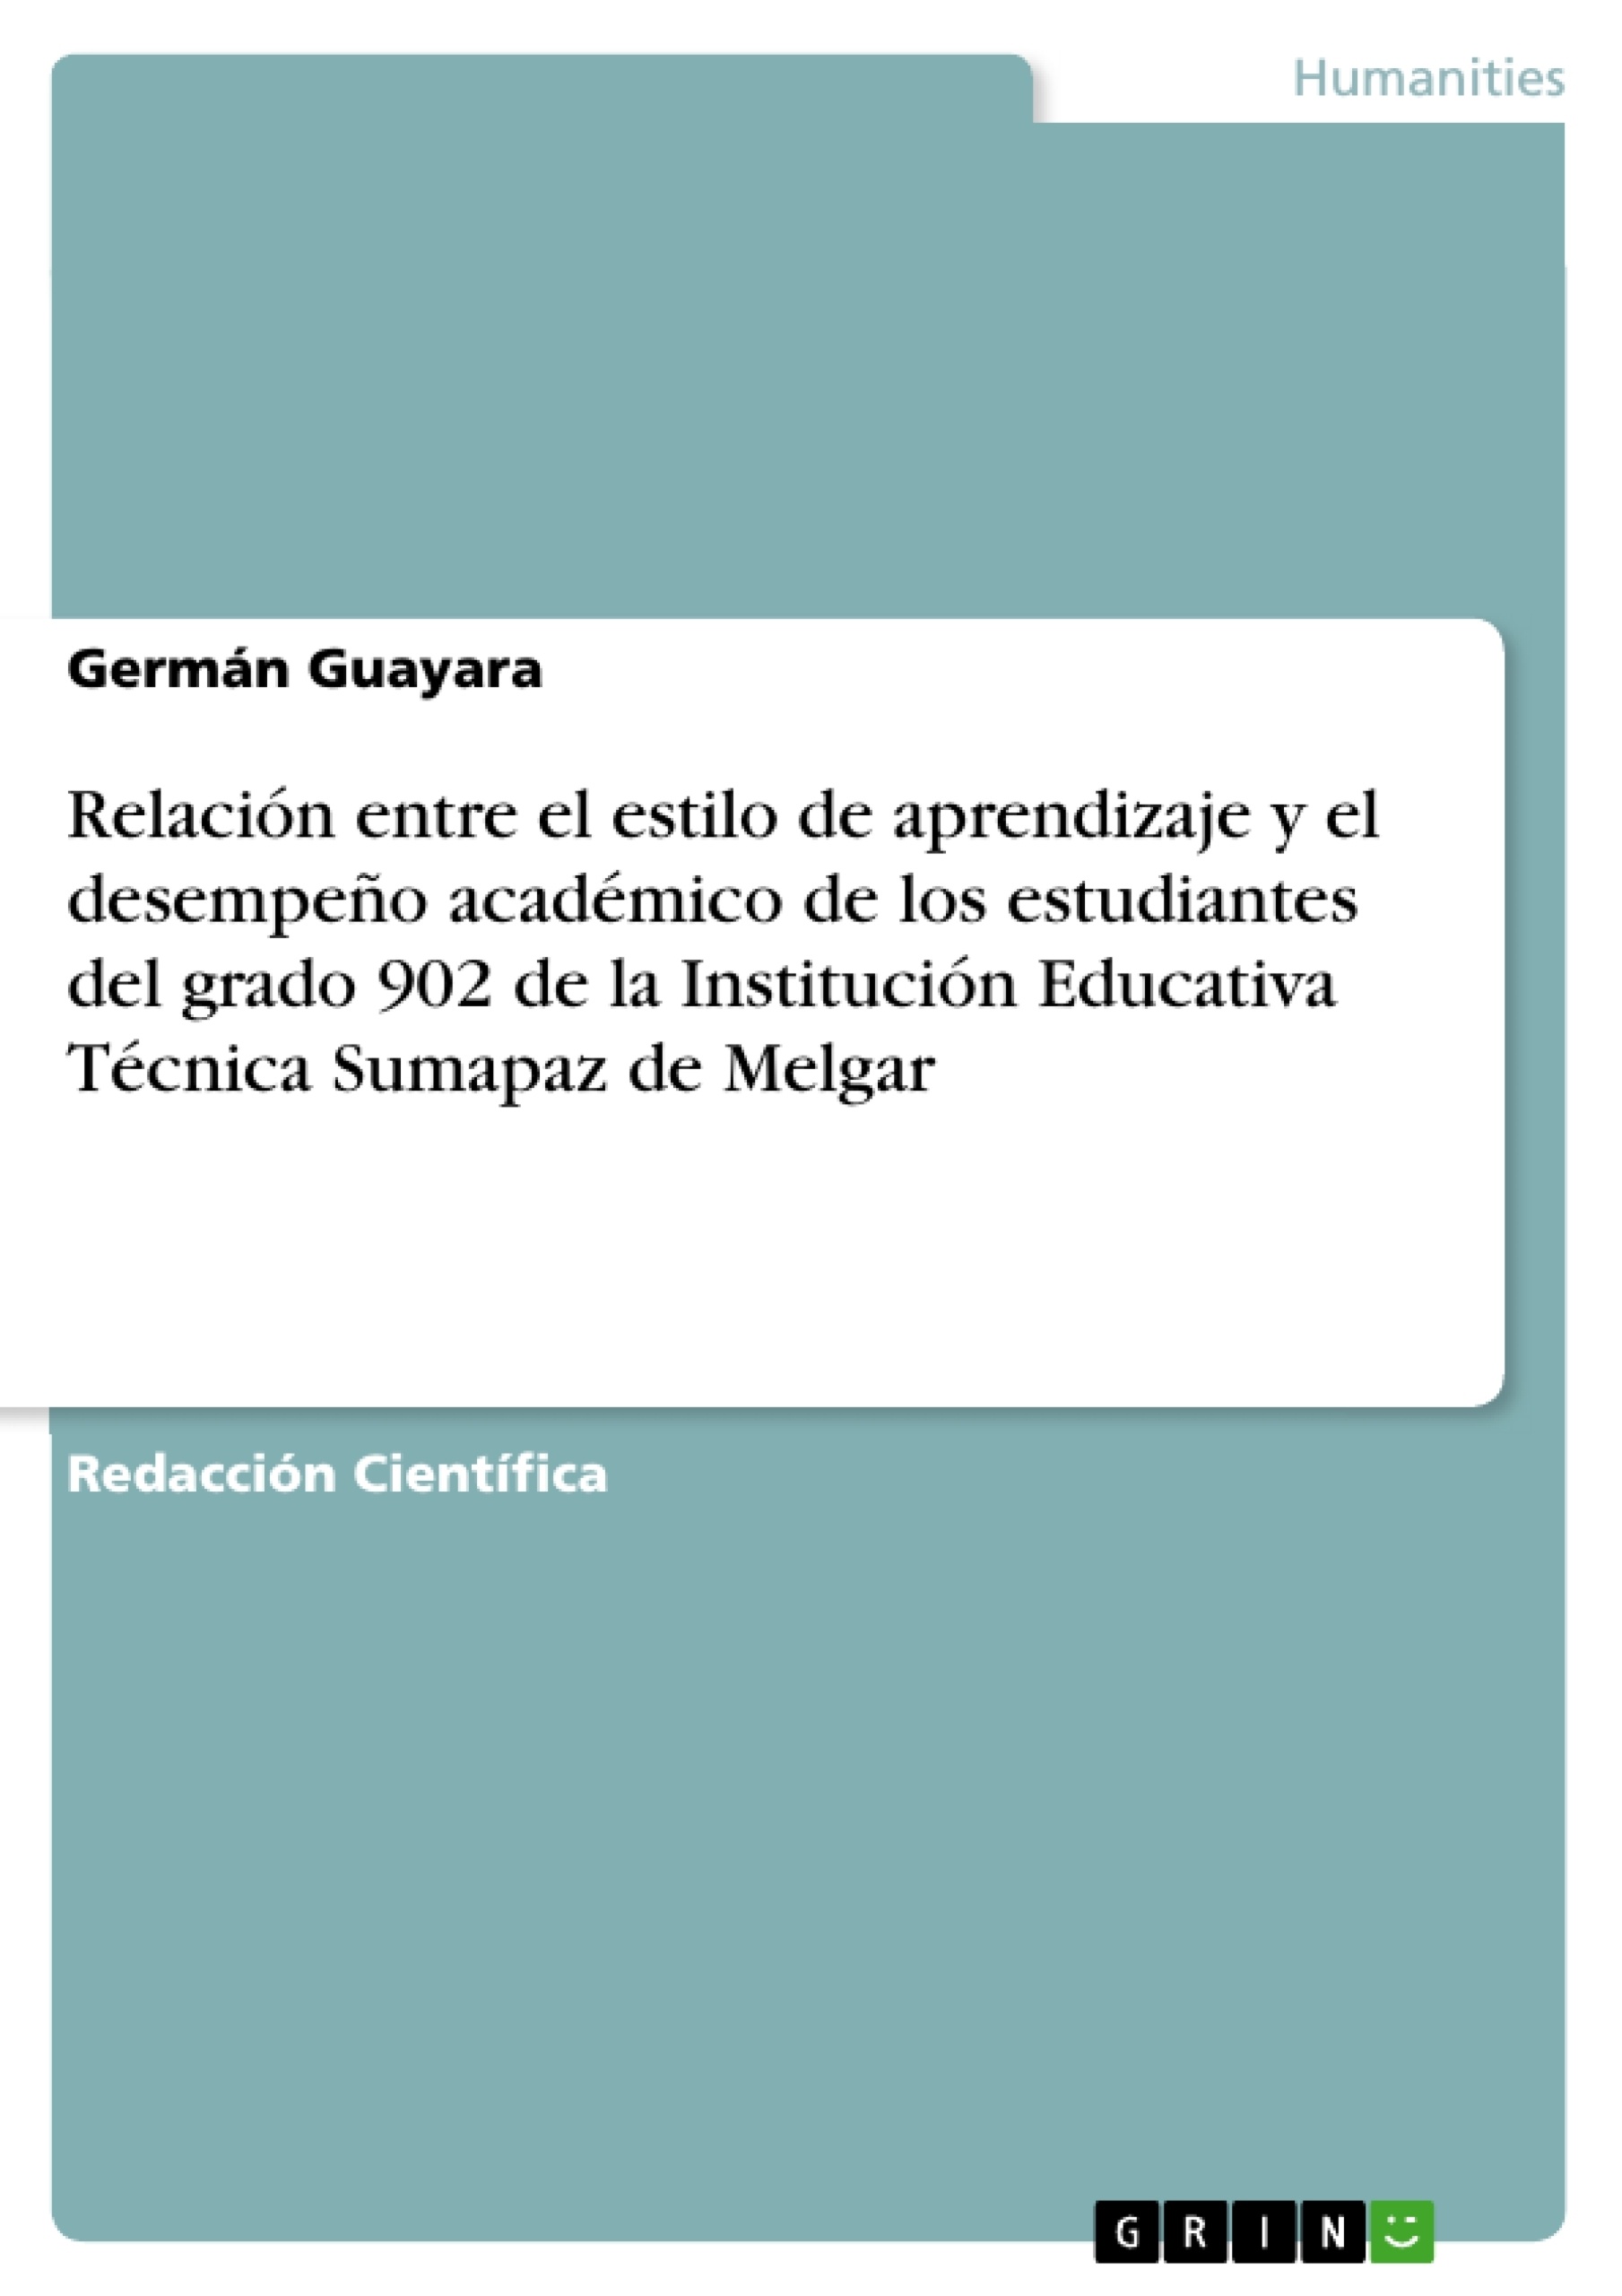 Title: Relación entre el estilo de aprendizaje y el desempeño académico de los estudiantes del grado 902 de la Institución Educativa Técnica Sumapaz de Melgar